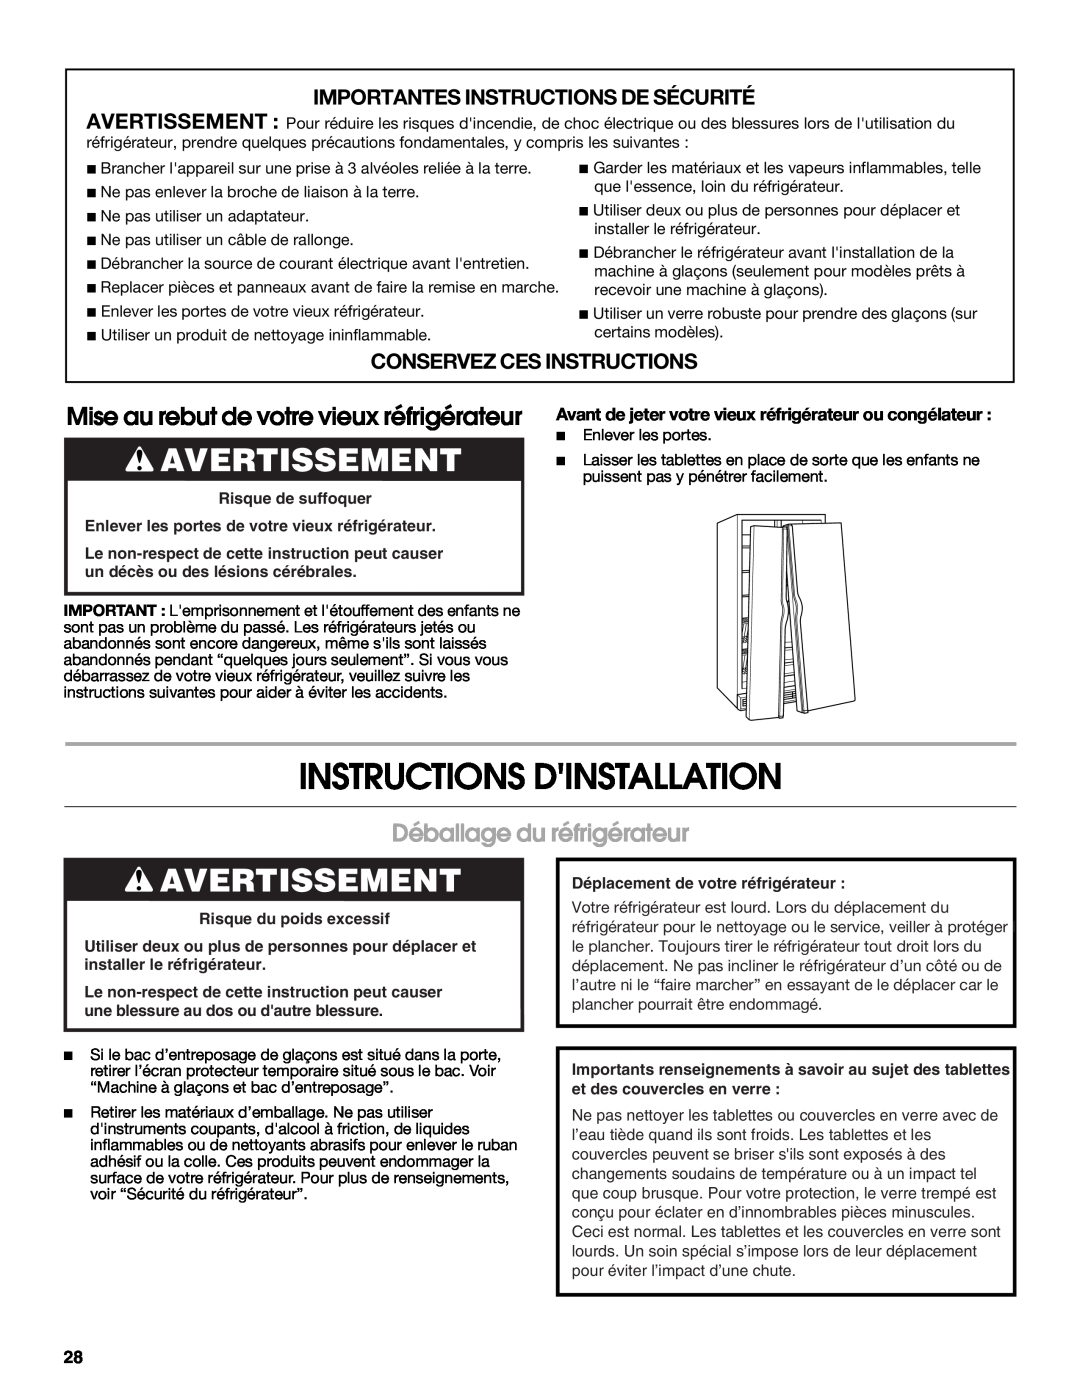 Whirlpool RS22AQXMQ01 Instructions Dinstallation, Avertissement, Déballage du réfrigérateur, Conservez Ces Instructions 